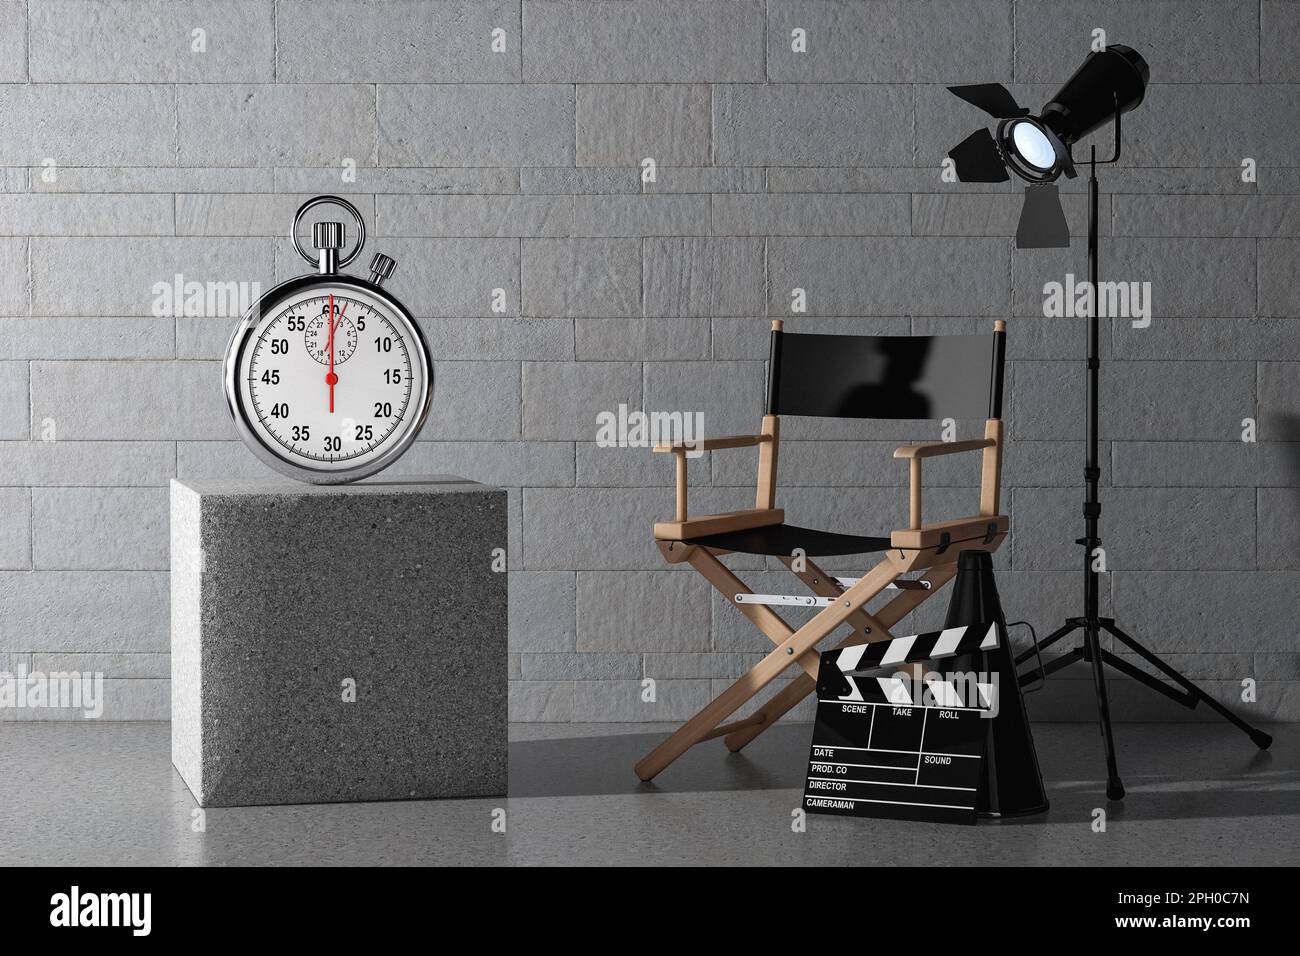 Stoppuhr mit leerem Bildschirm in der Nähe des Regisseurs, Filmklapper und Spotlight vor Steinblöcken Wandhintergrund. 3D-Rendering Stockfoto